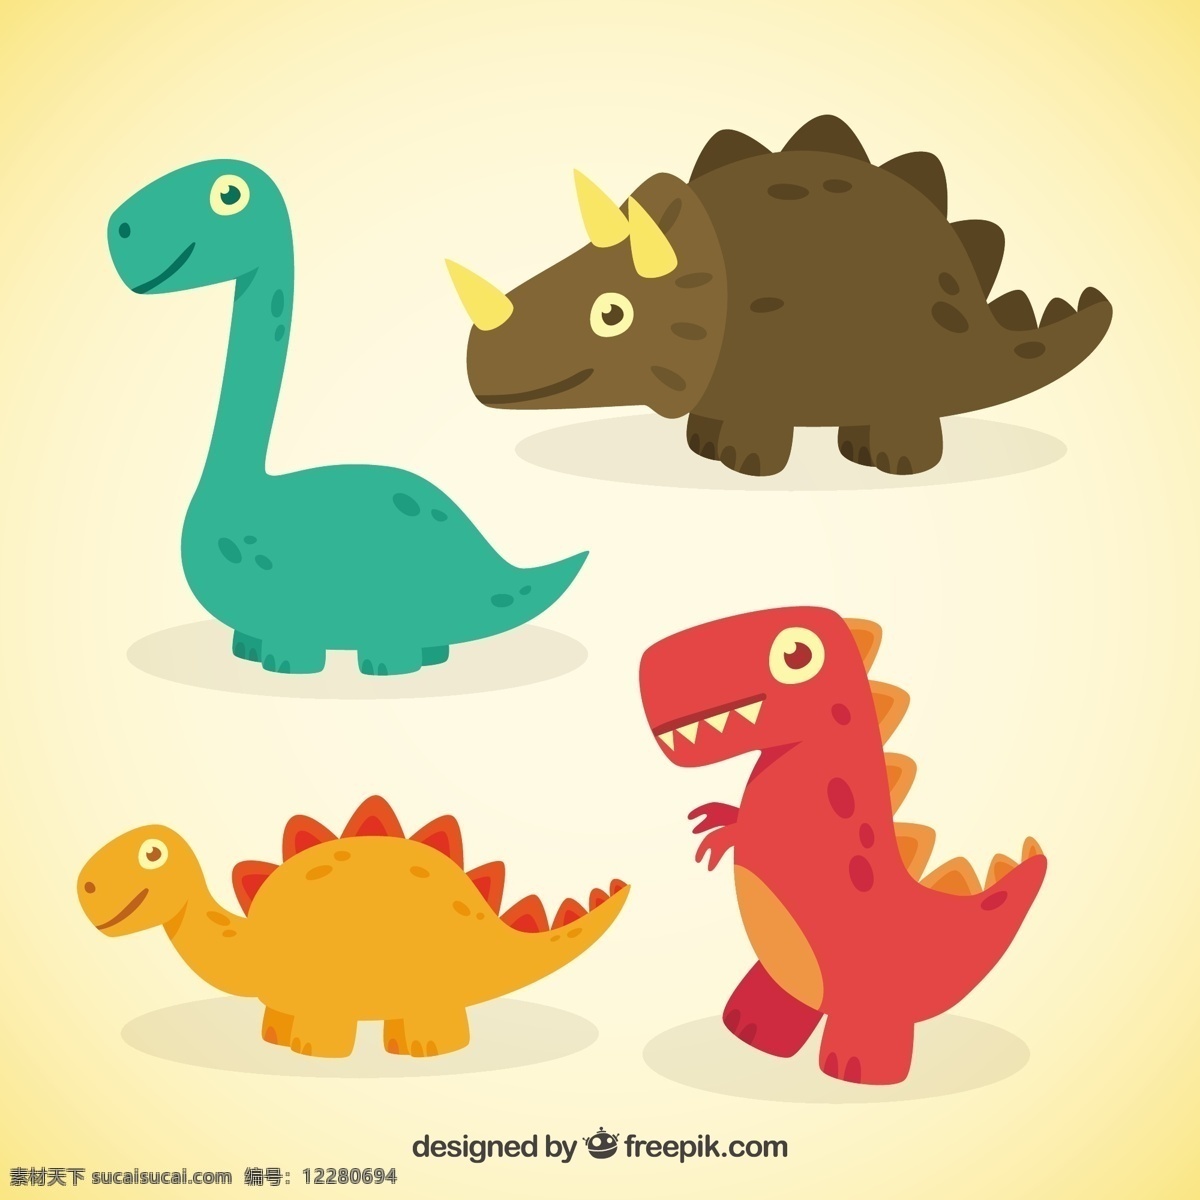 漂亮 的卡 通 恐龙 自然 动物 卡通 怪兽 卡通动物 野生动物 蜥蜴 大型恐龙 爬行动物 史前 捕食者 侏罗纪 雷克斯 白色